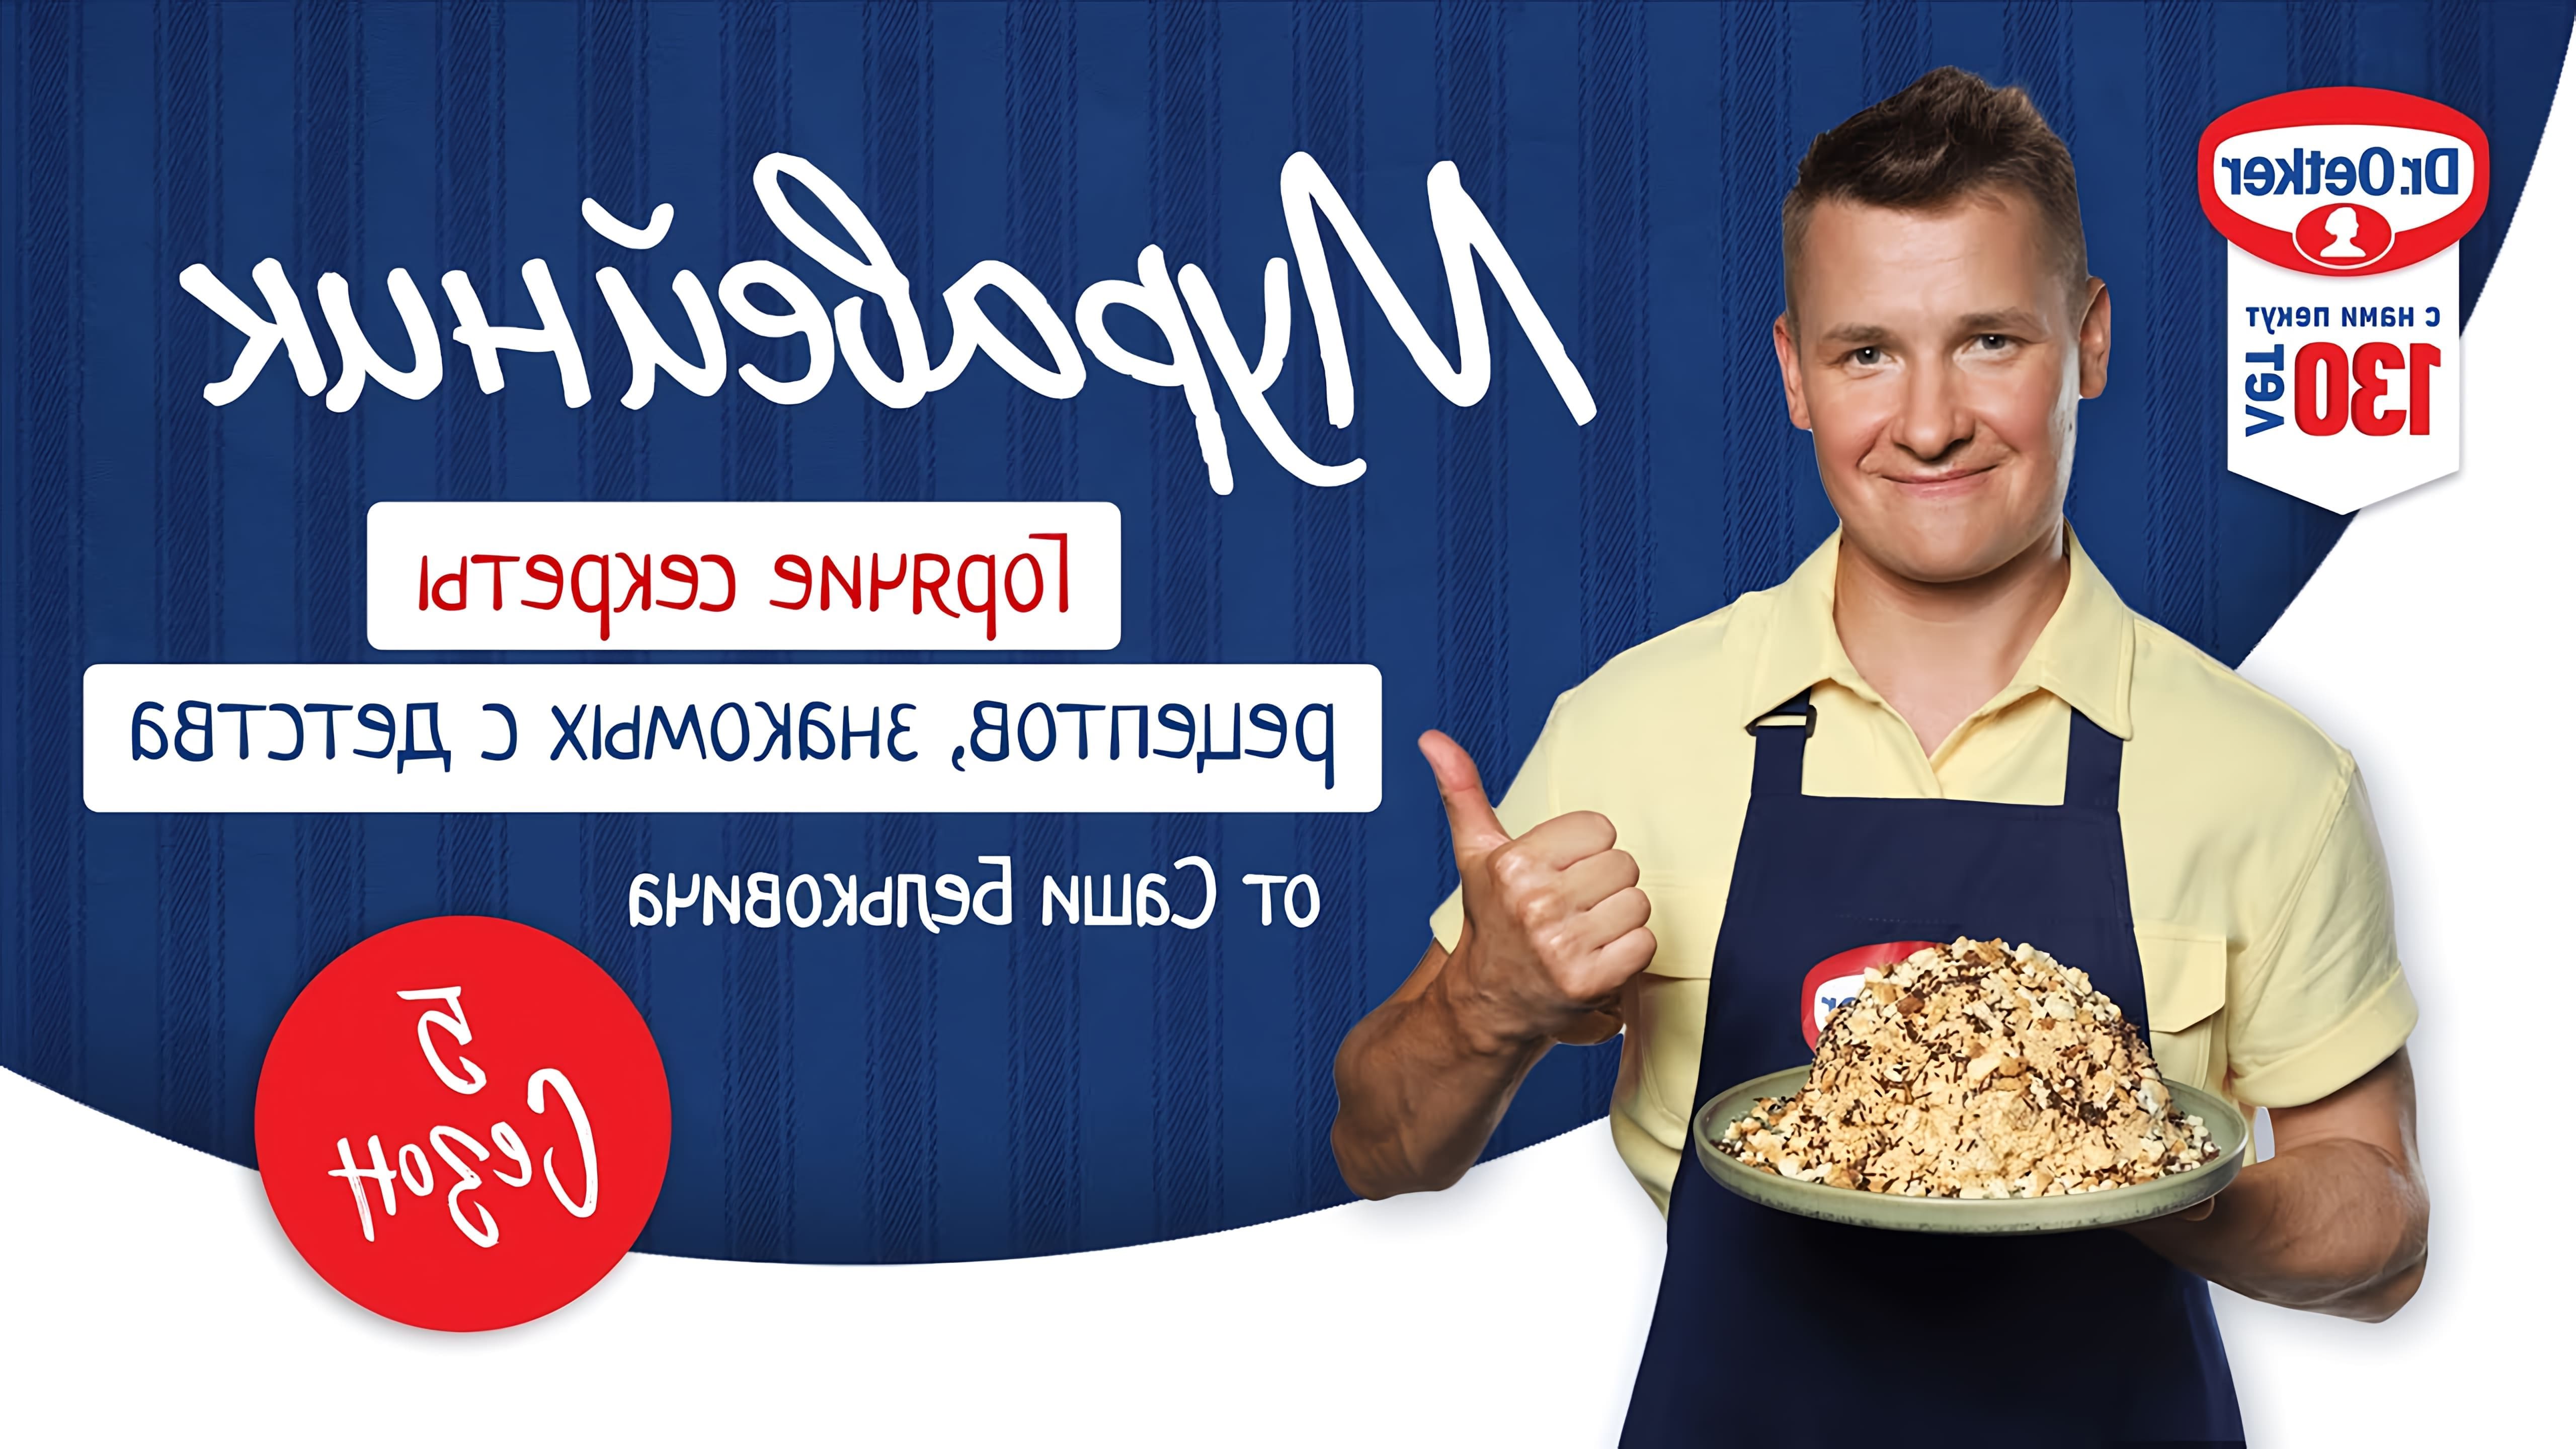 В этом видео Александр Белькович, известный шеф-повар и ведущий кулинарного шоу "Горячие секреты", делится рецептом торта "Муравейник"